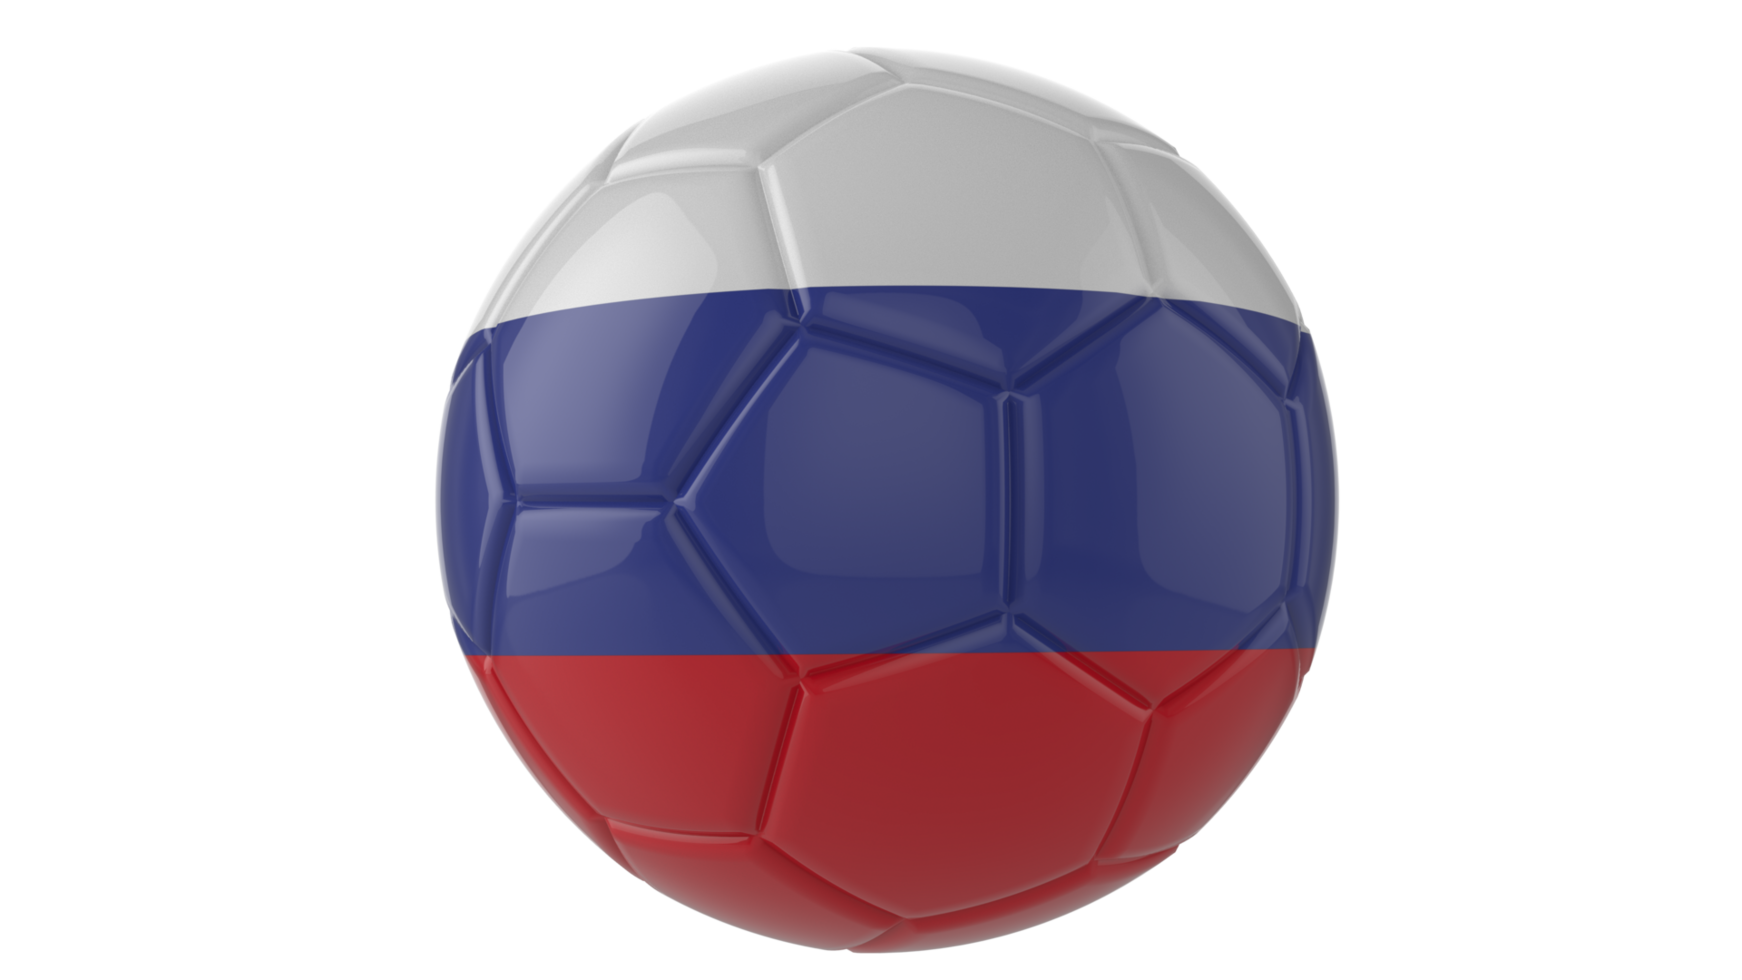 3d bola de futebol realista com a bandeira da rússia isolada em fundo png transparente